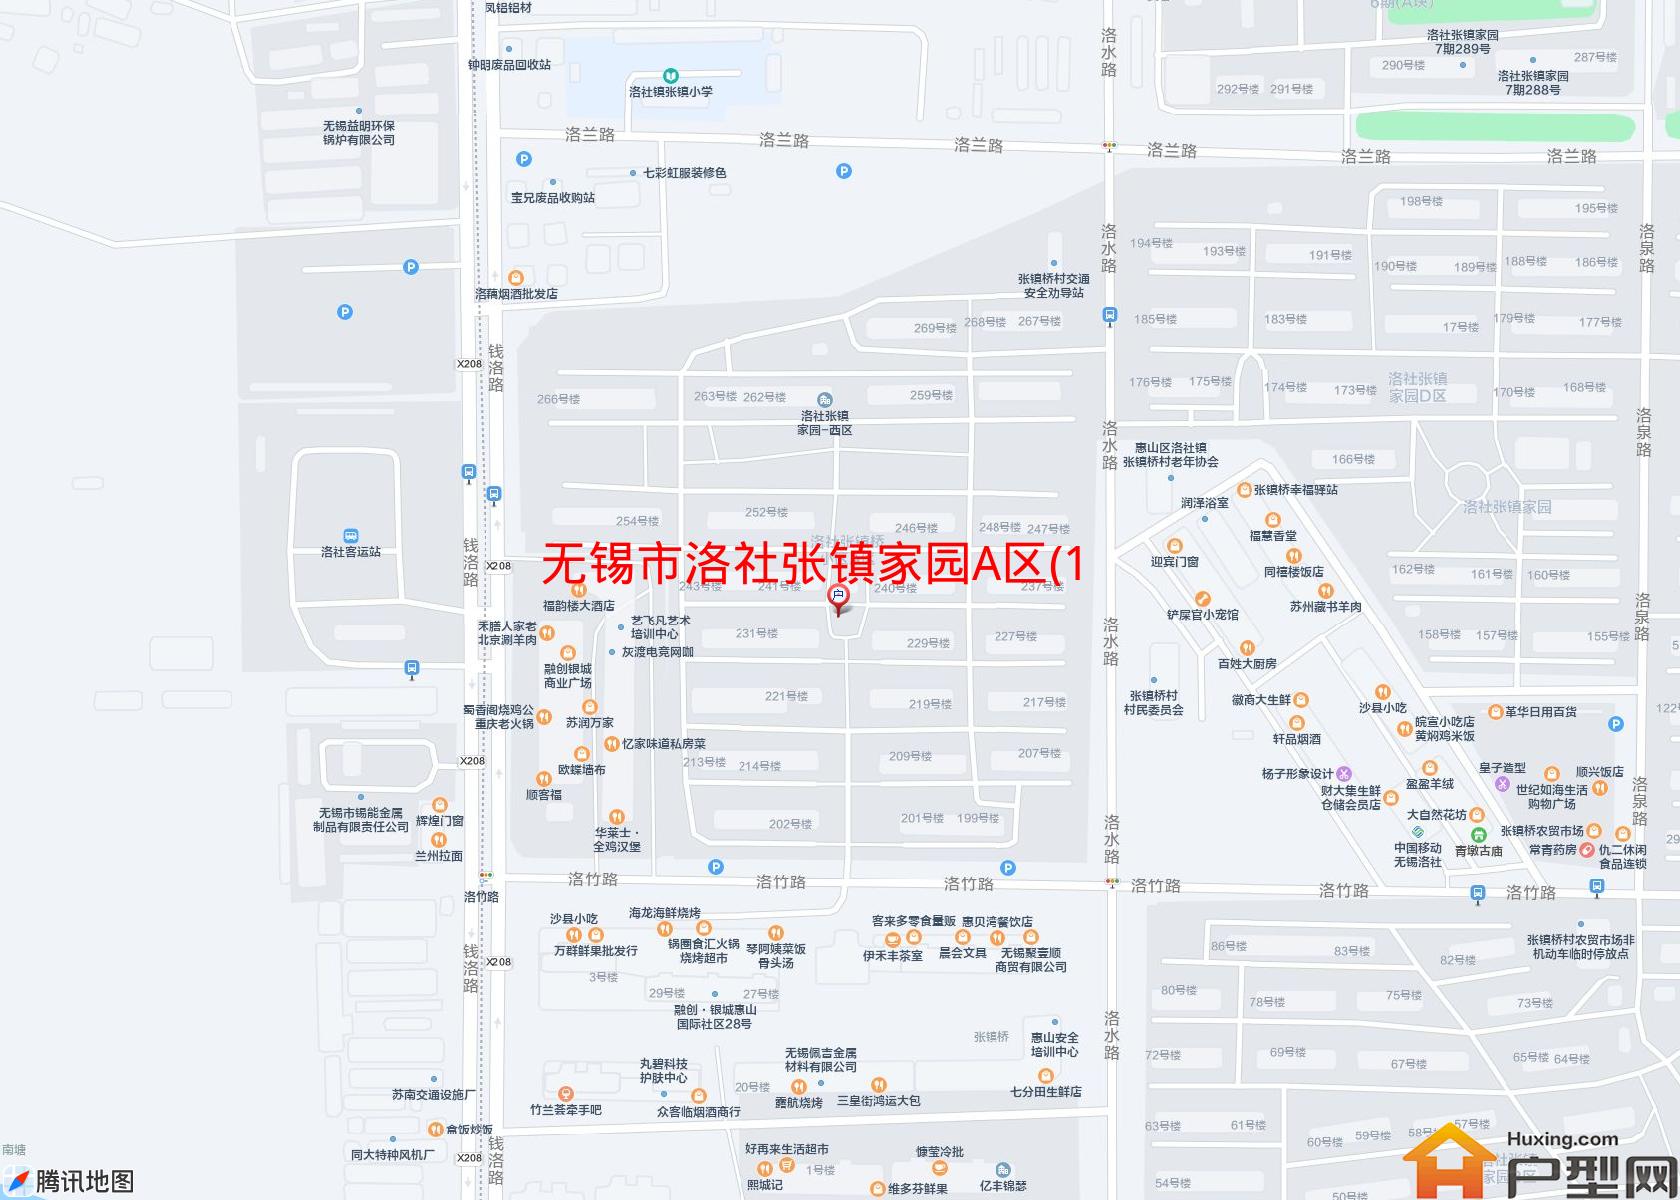 洛社张镇家园A区(199-270)小区 - 户型网